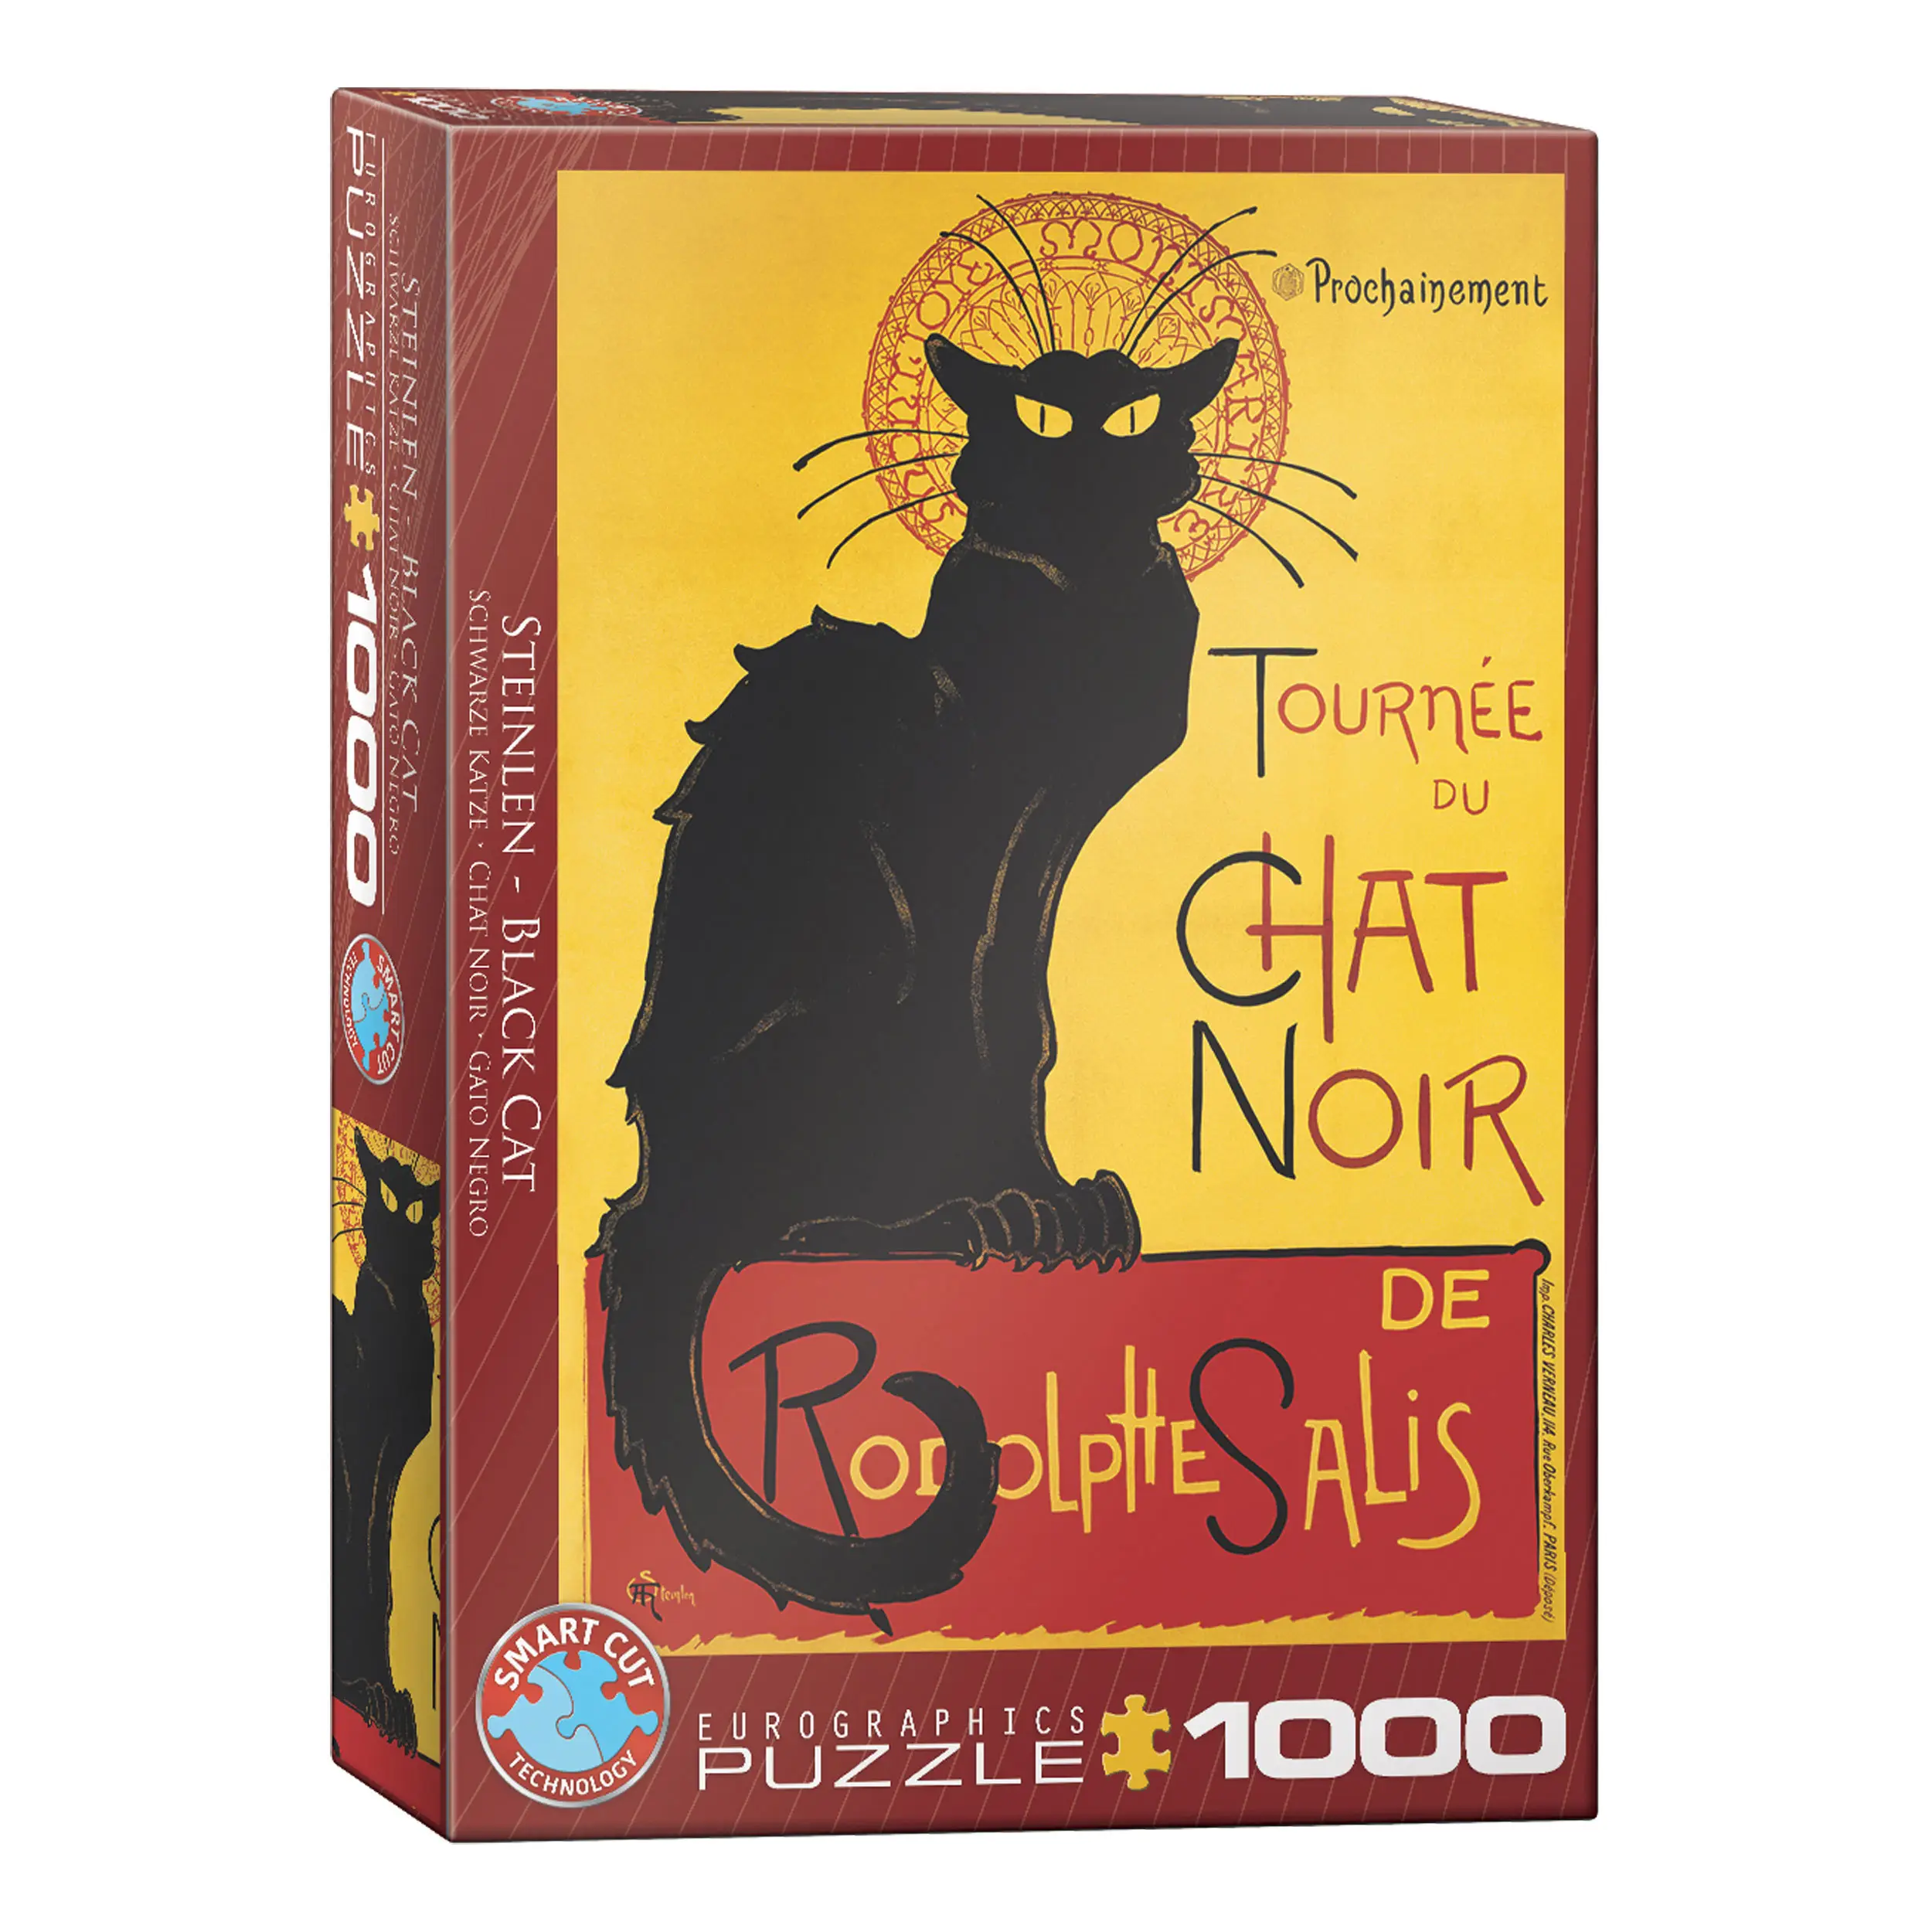 1000 Puzzle Chat Tournee Teile du Noir